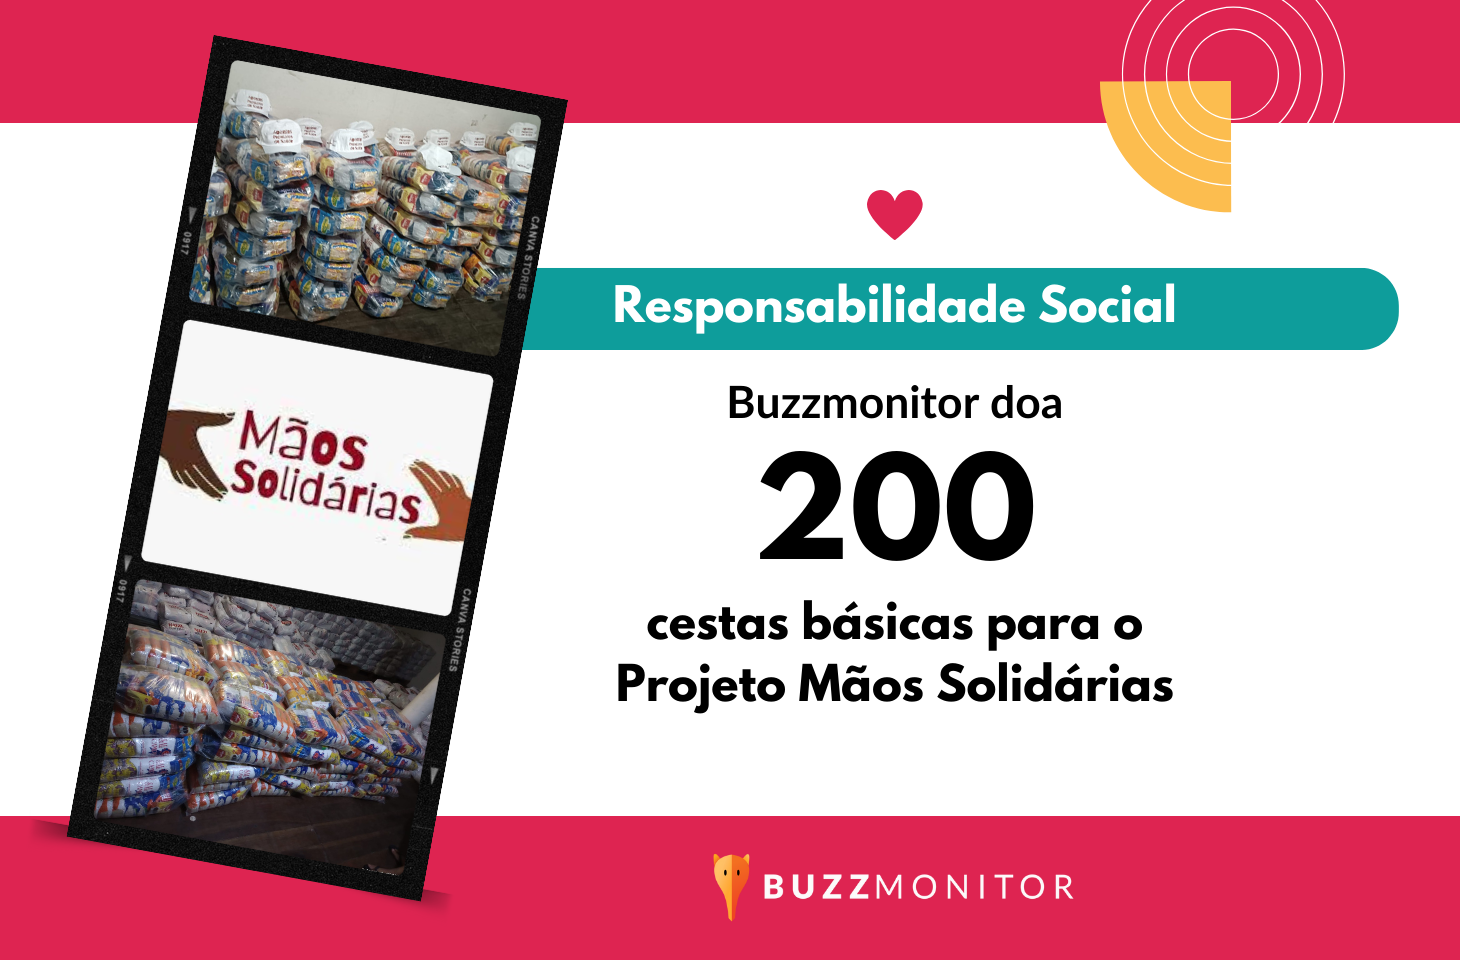 Buzzmonitor tem projeto de Responsabilidade social que doa mensalmente cestas básicas em Pernambuco